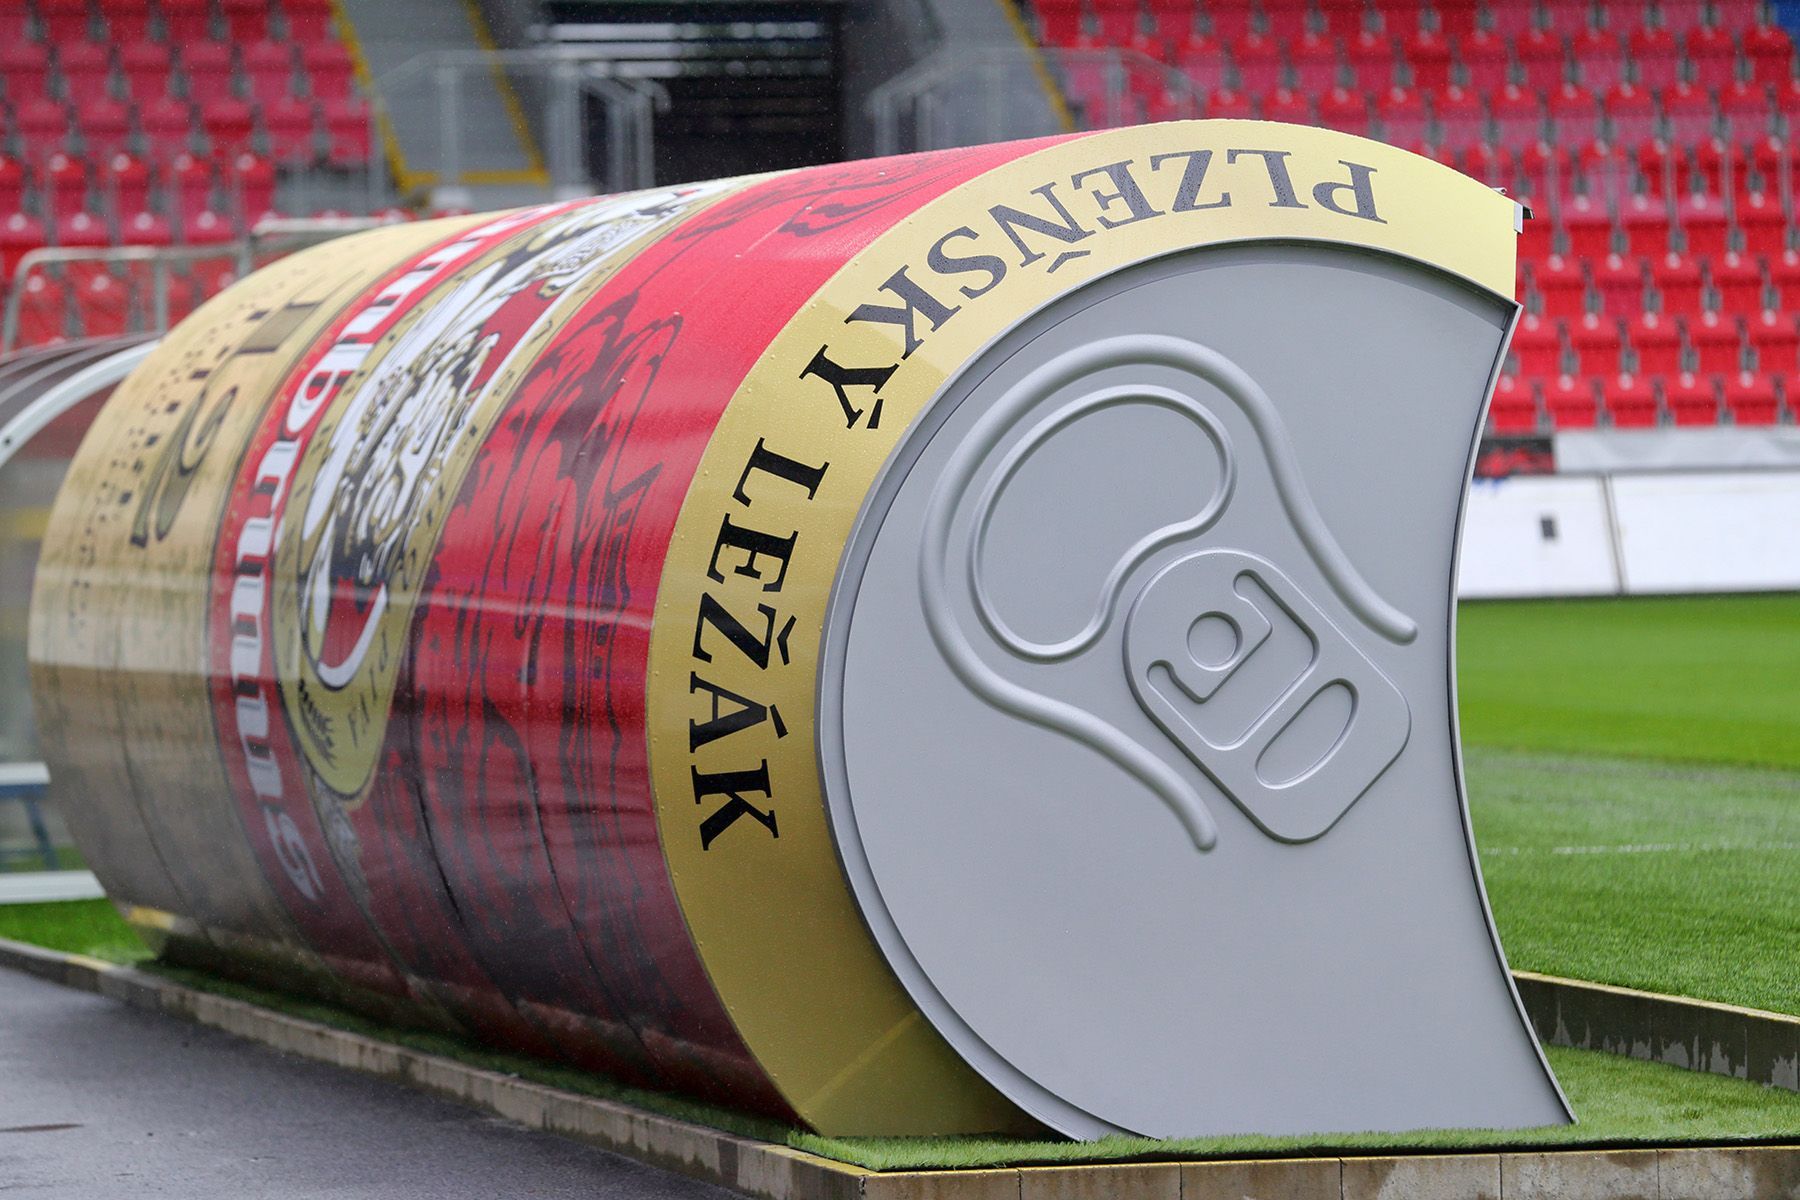 Plzeňské střídačky ve tvaru plechovky od piva